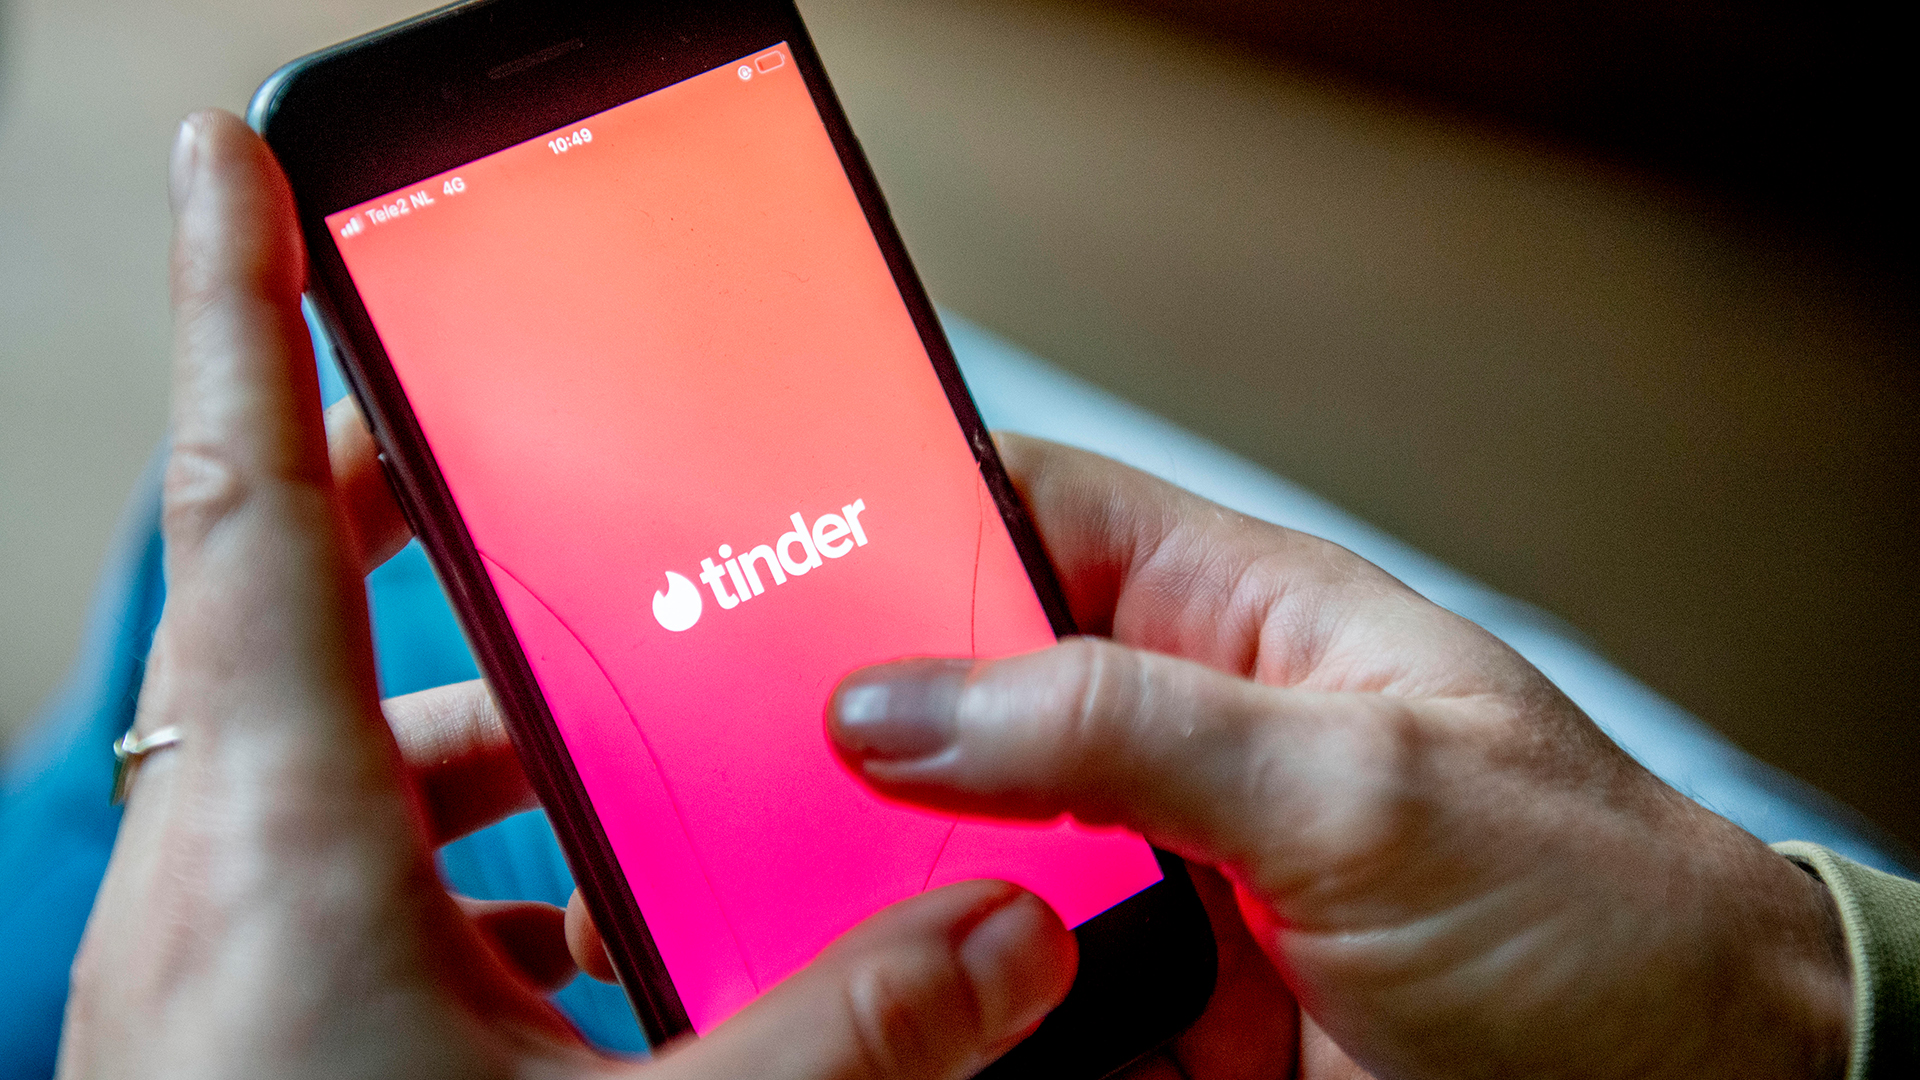 Tinder-App auf einem Smartphone | picture alliance / ROBIN UTRECHT